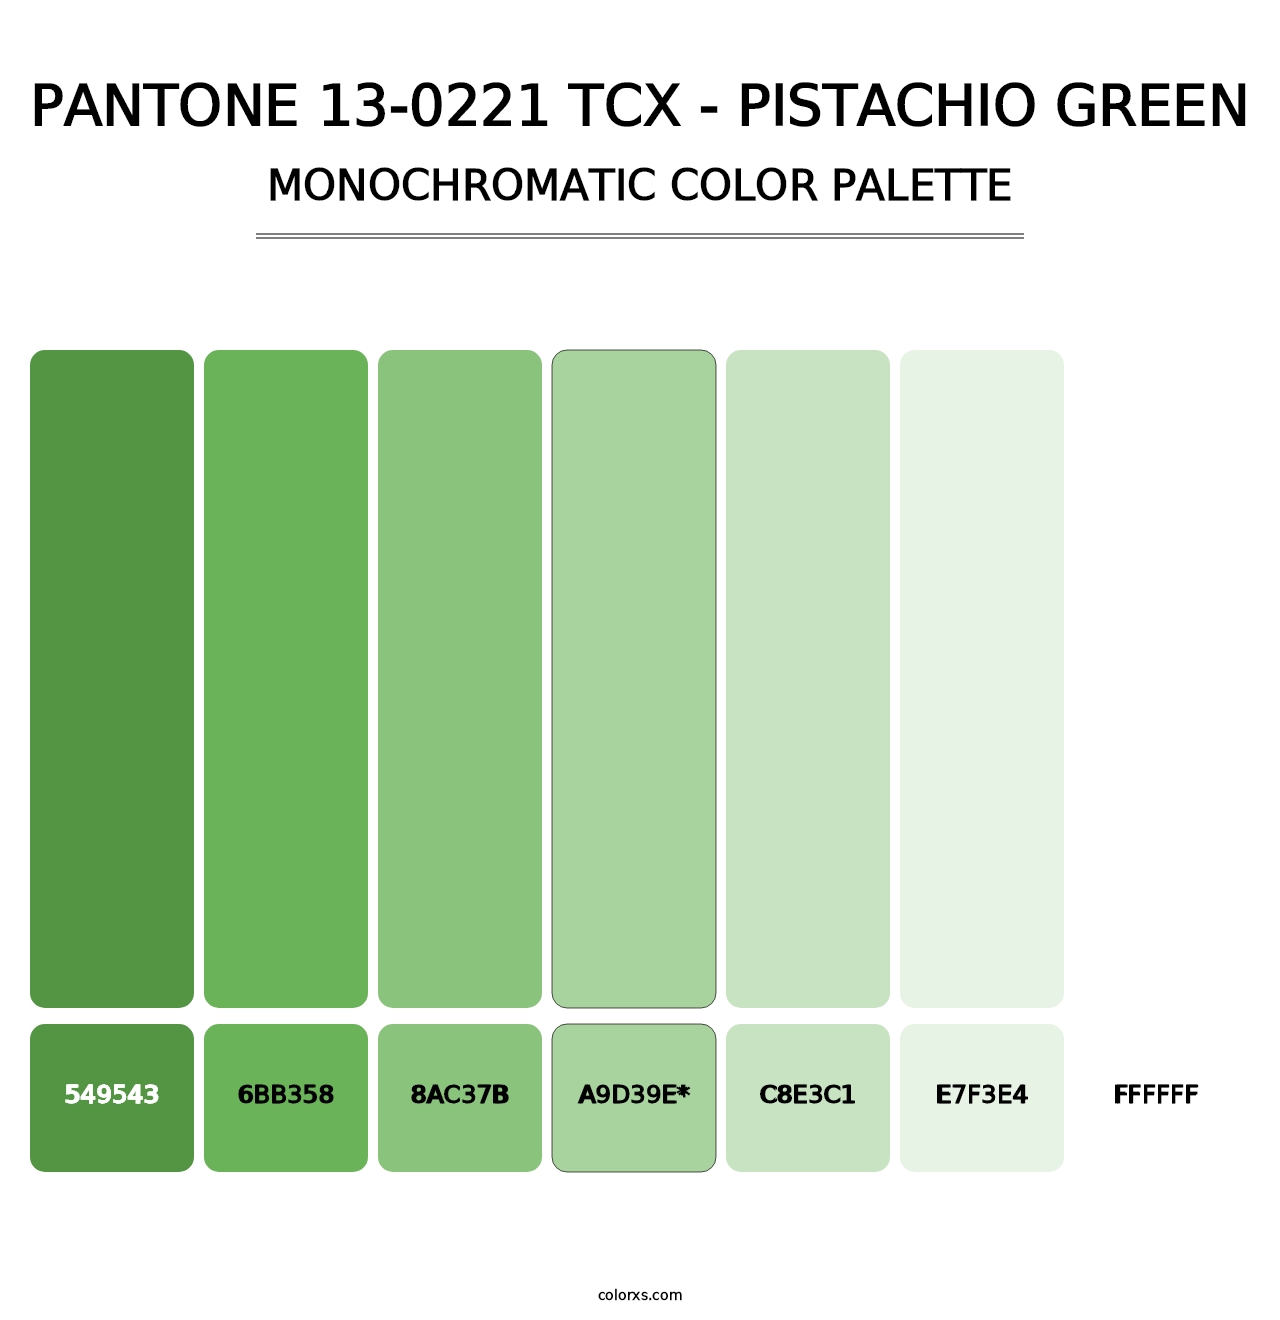 PANTONE 13-0221 TCX - Pistachio Green - Monochromatic Color Palette